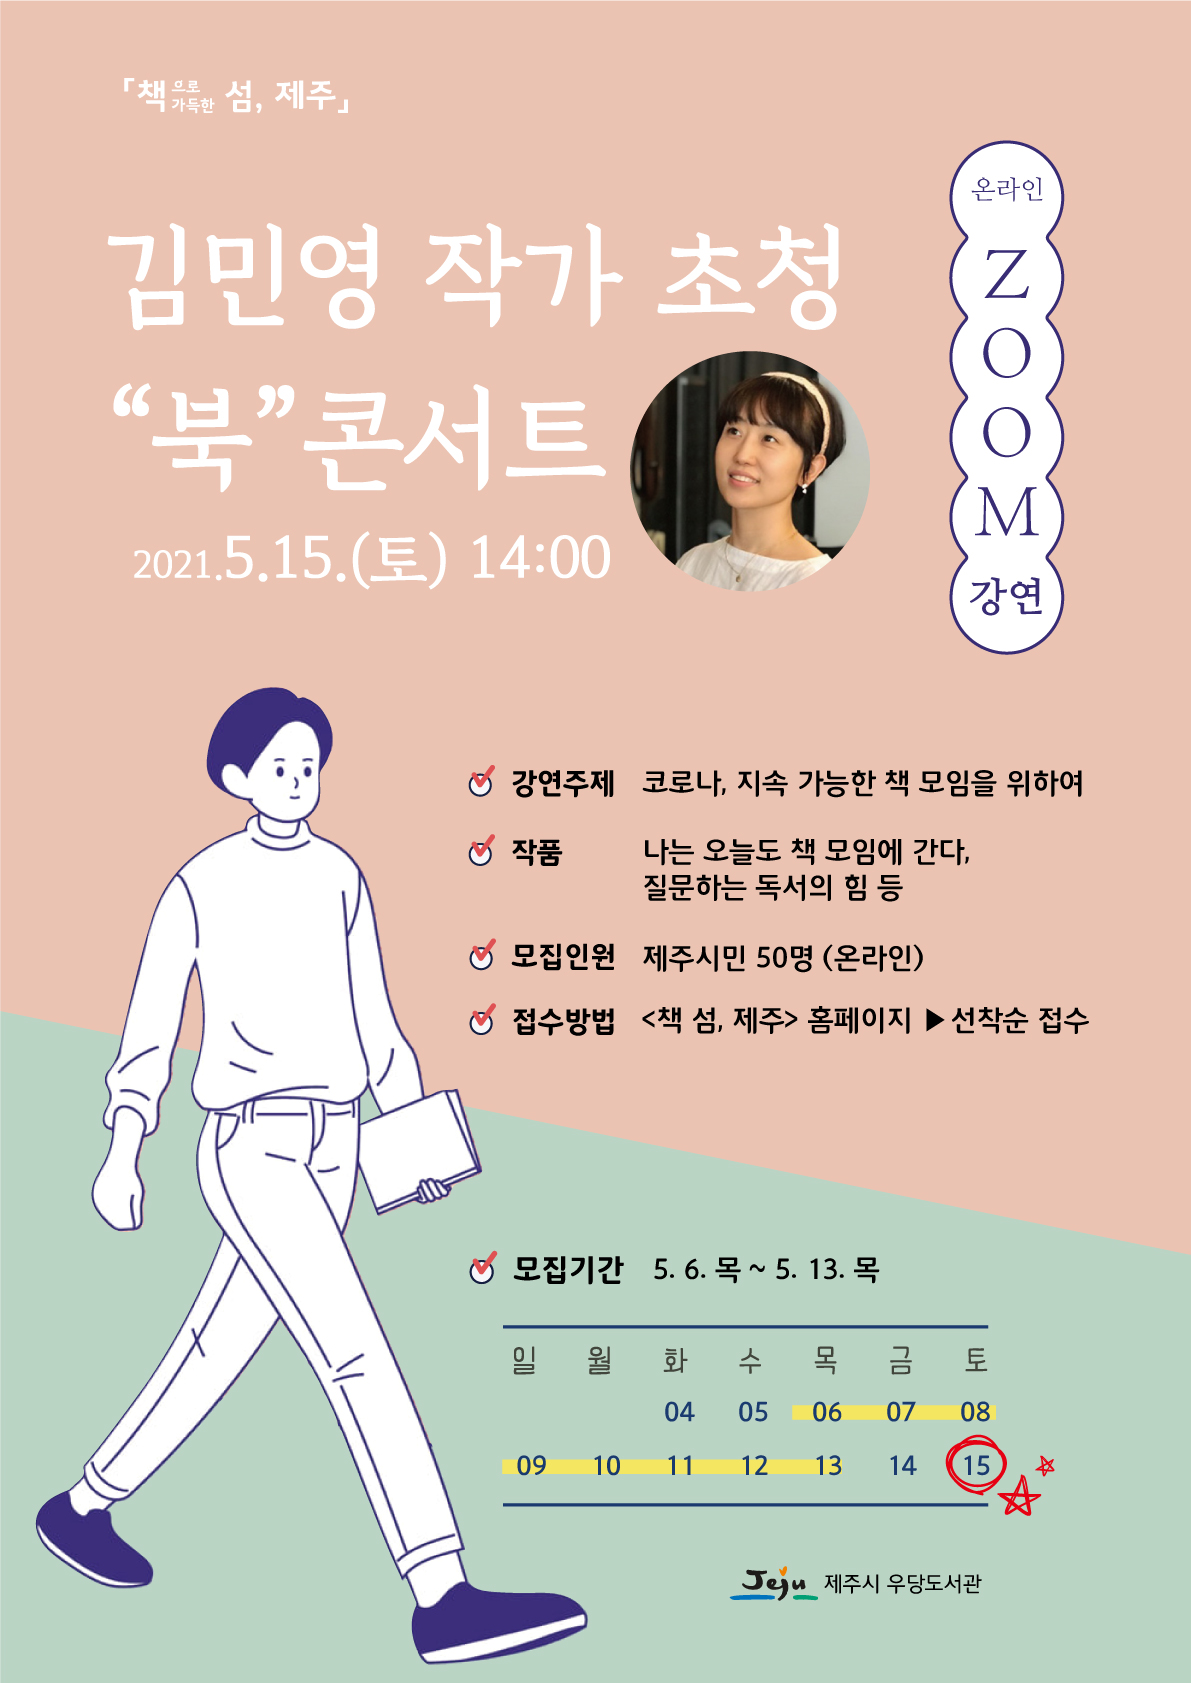 김민영 작가 "북" 콘서트 온라인(ZOOM) 참여자 모집 안내